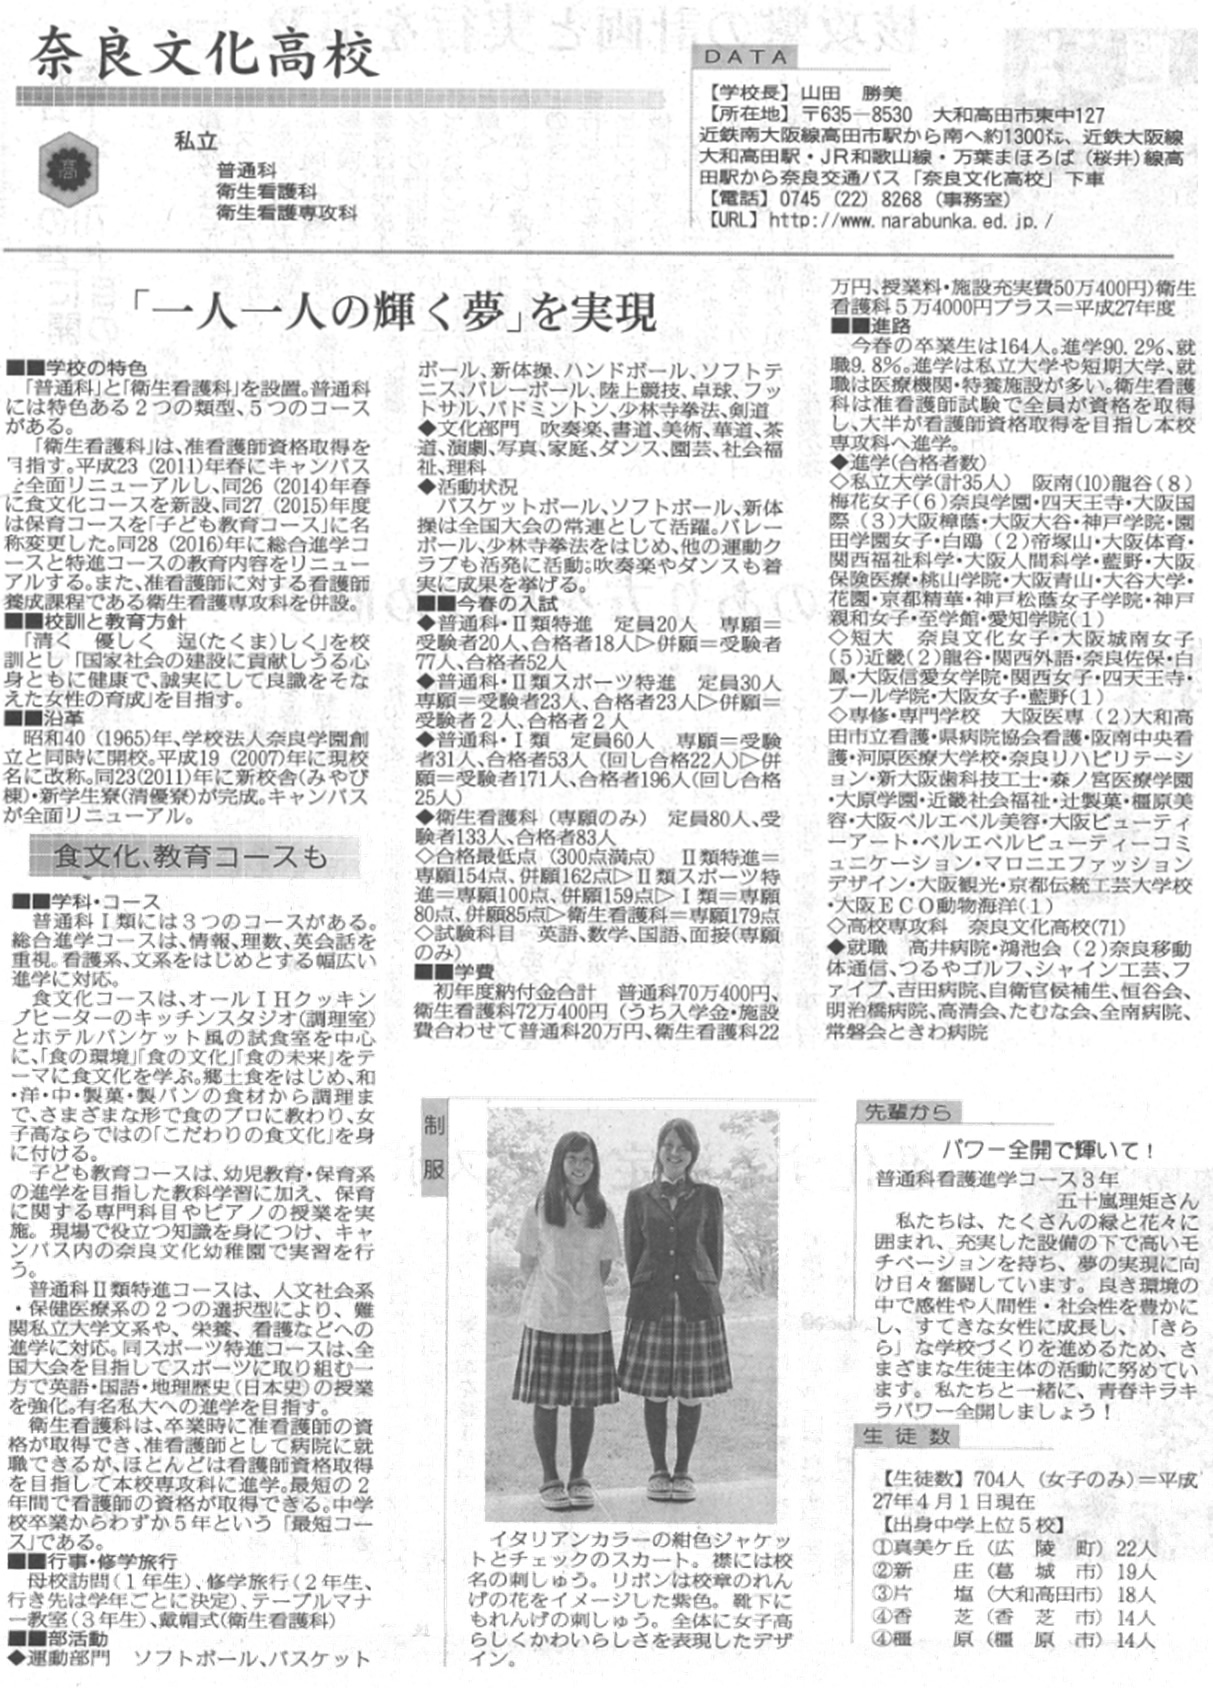 奈良新聞「「一人一人の輝く夢」を実現」